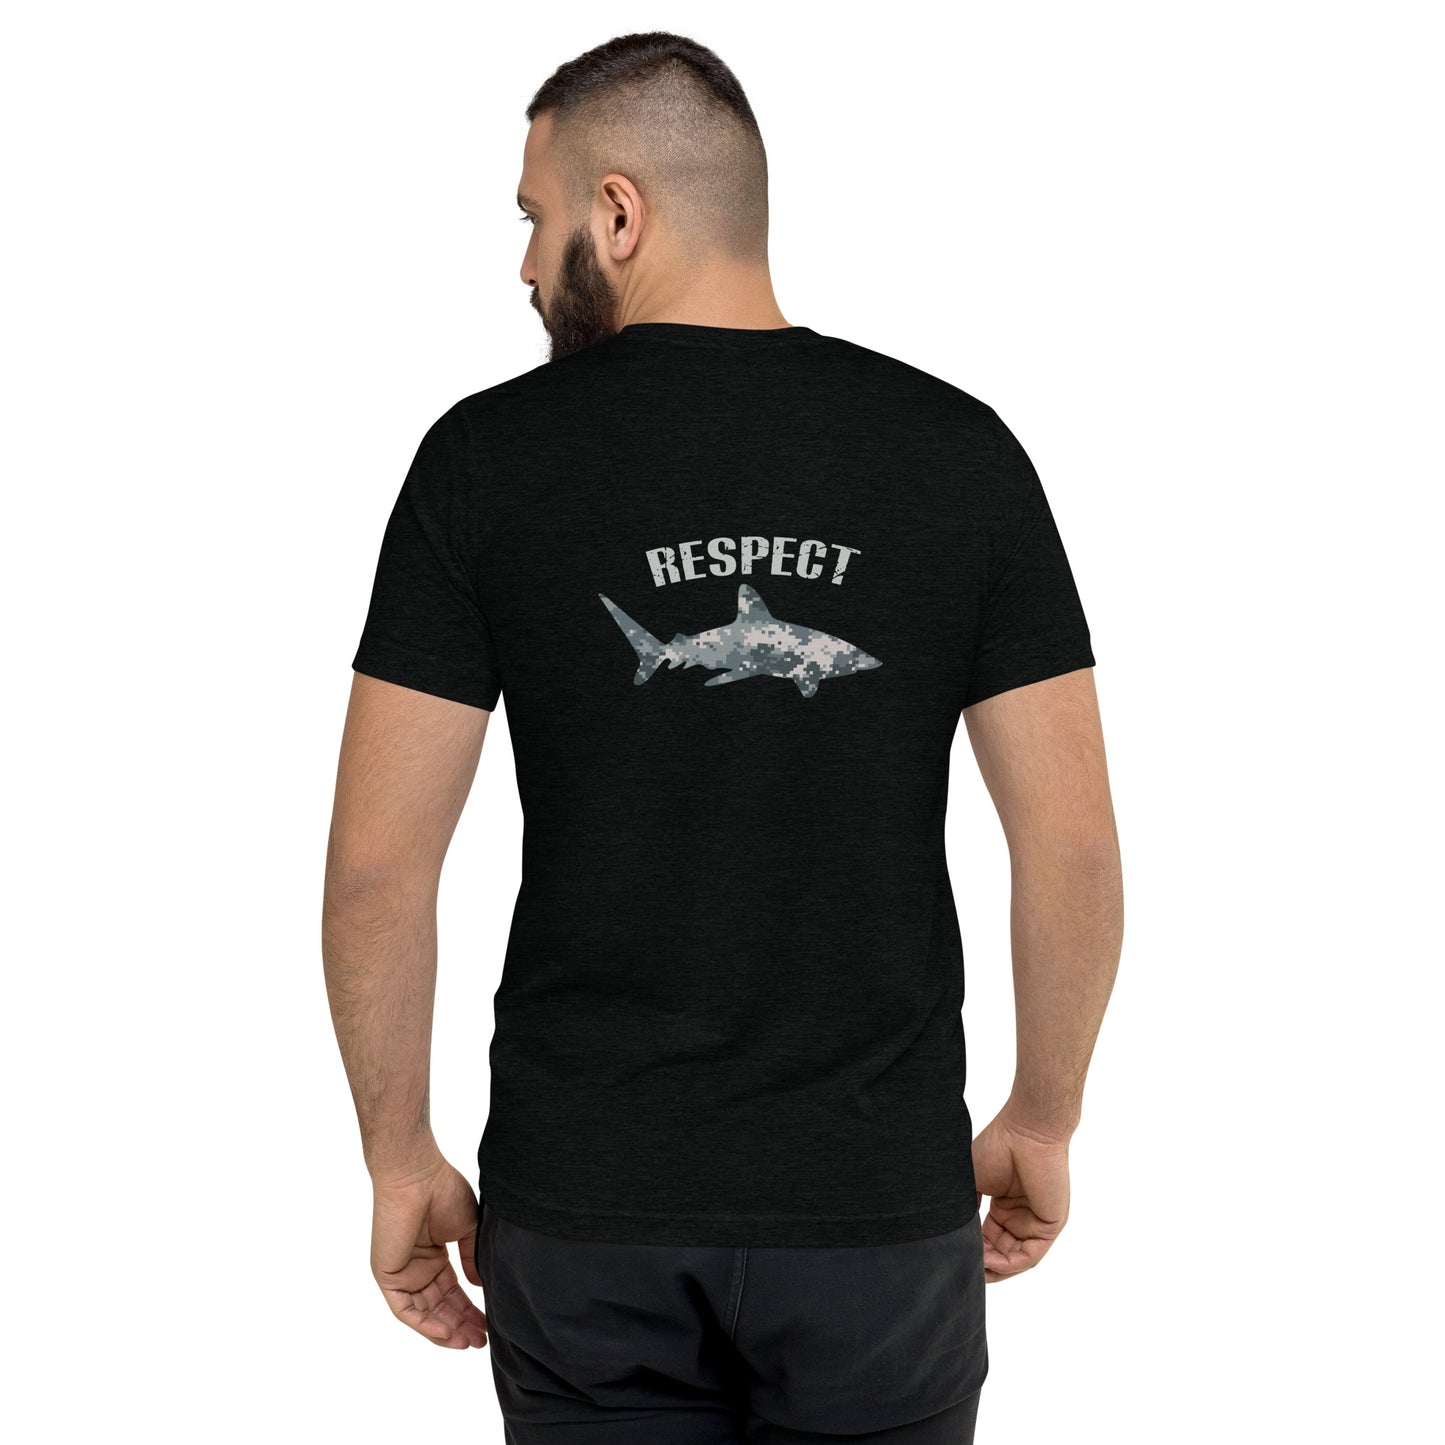 DEEPSEA Official Short sleeve t-shirt